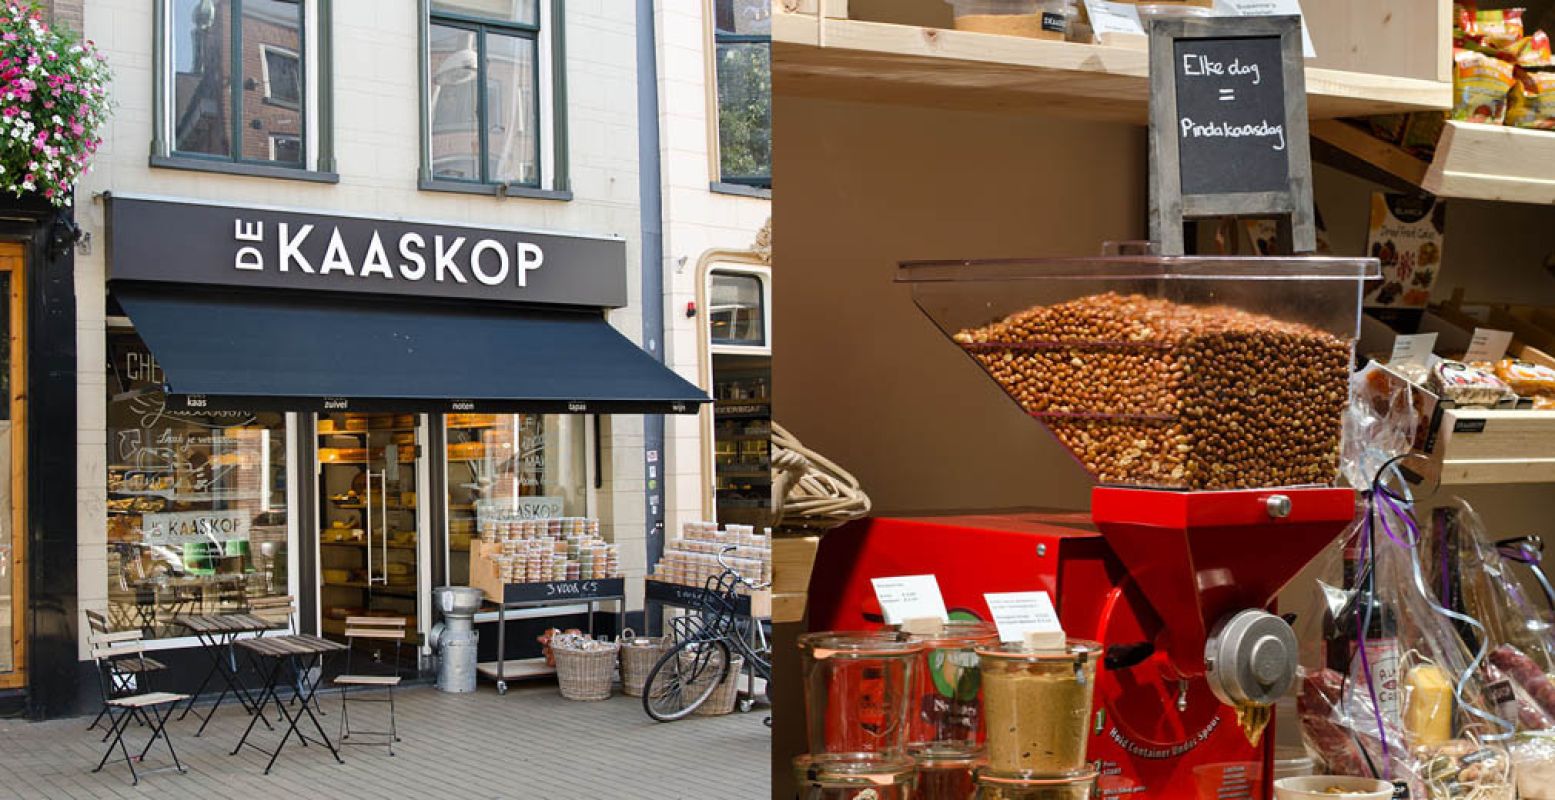 Winkelen doe je in het noorden: daar vind je de leukste winkelstraat en de leukste winkel van 2016. Foto: De Kaaskop, Erik Vos.